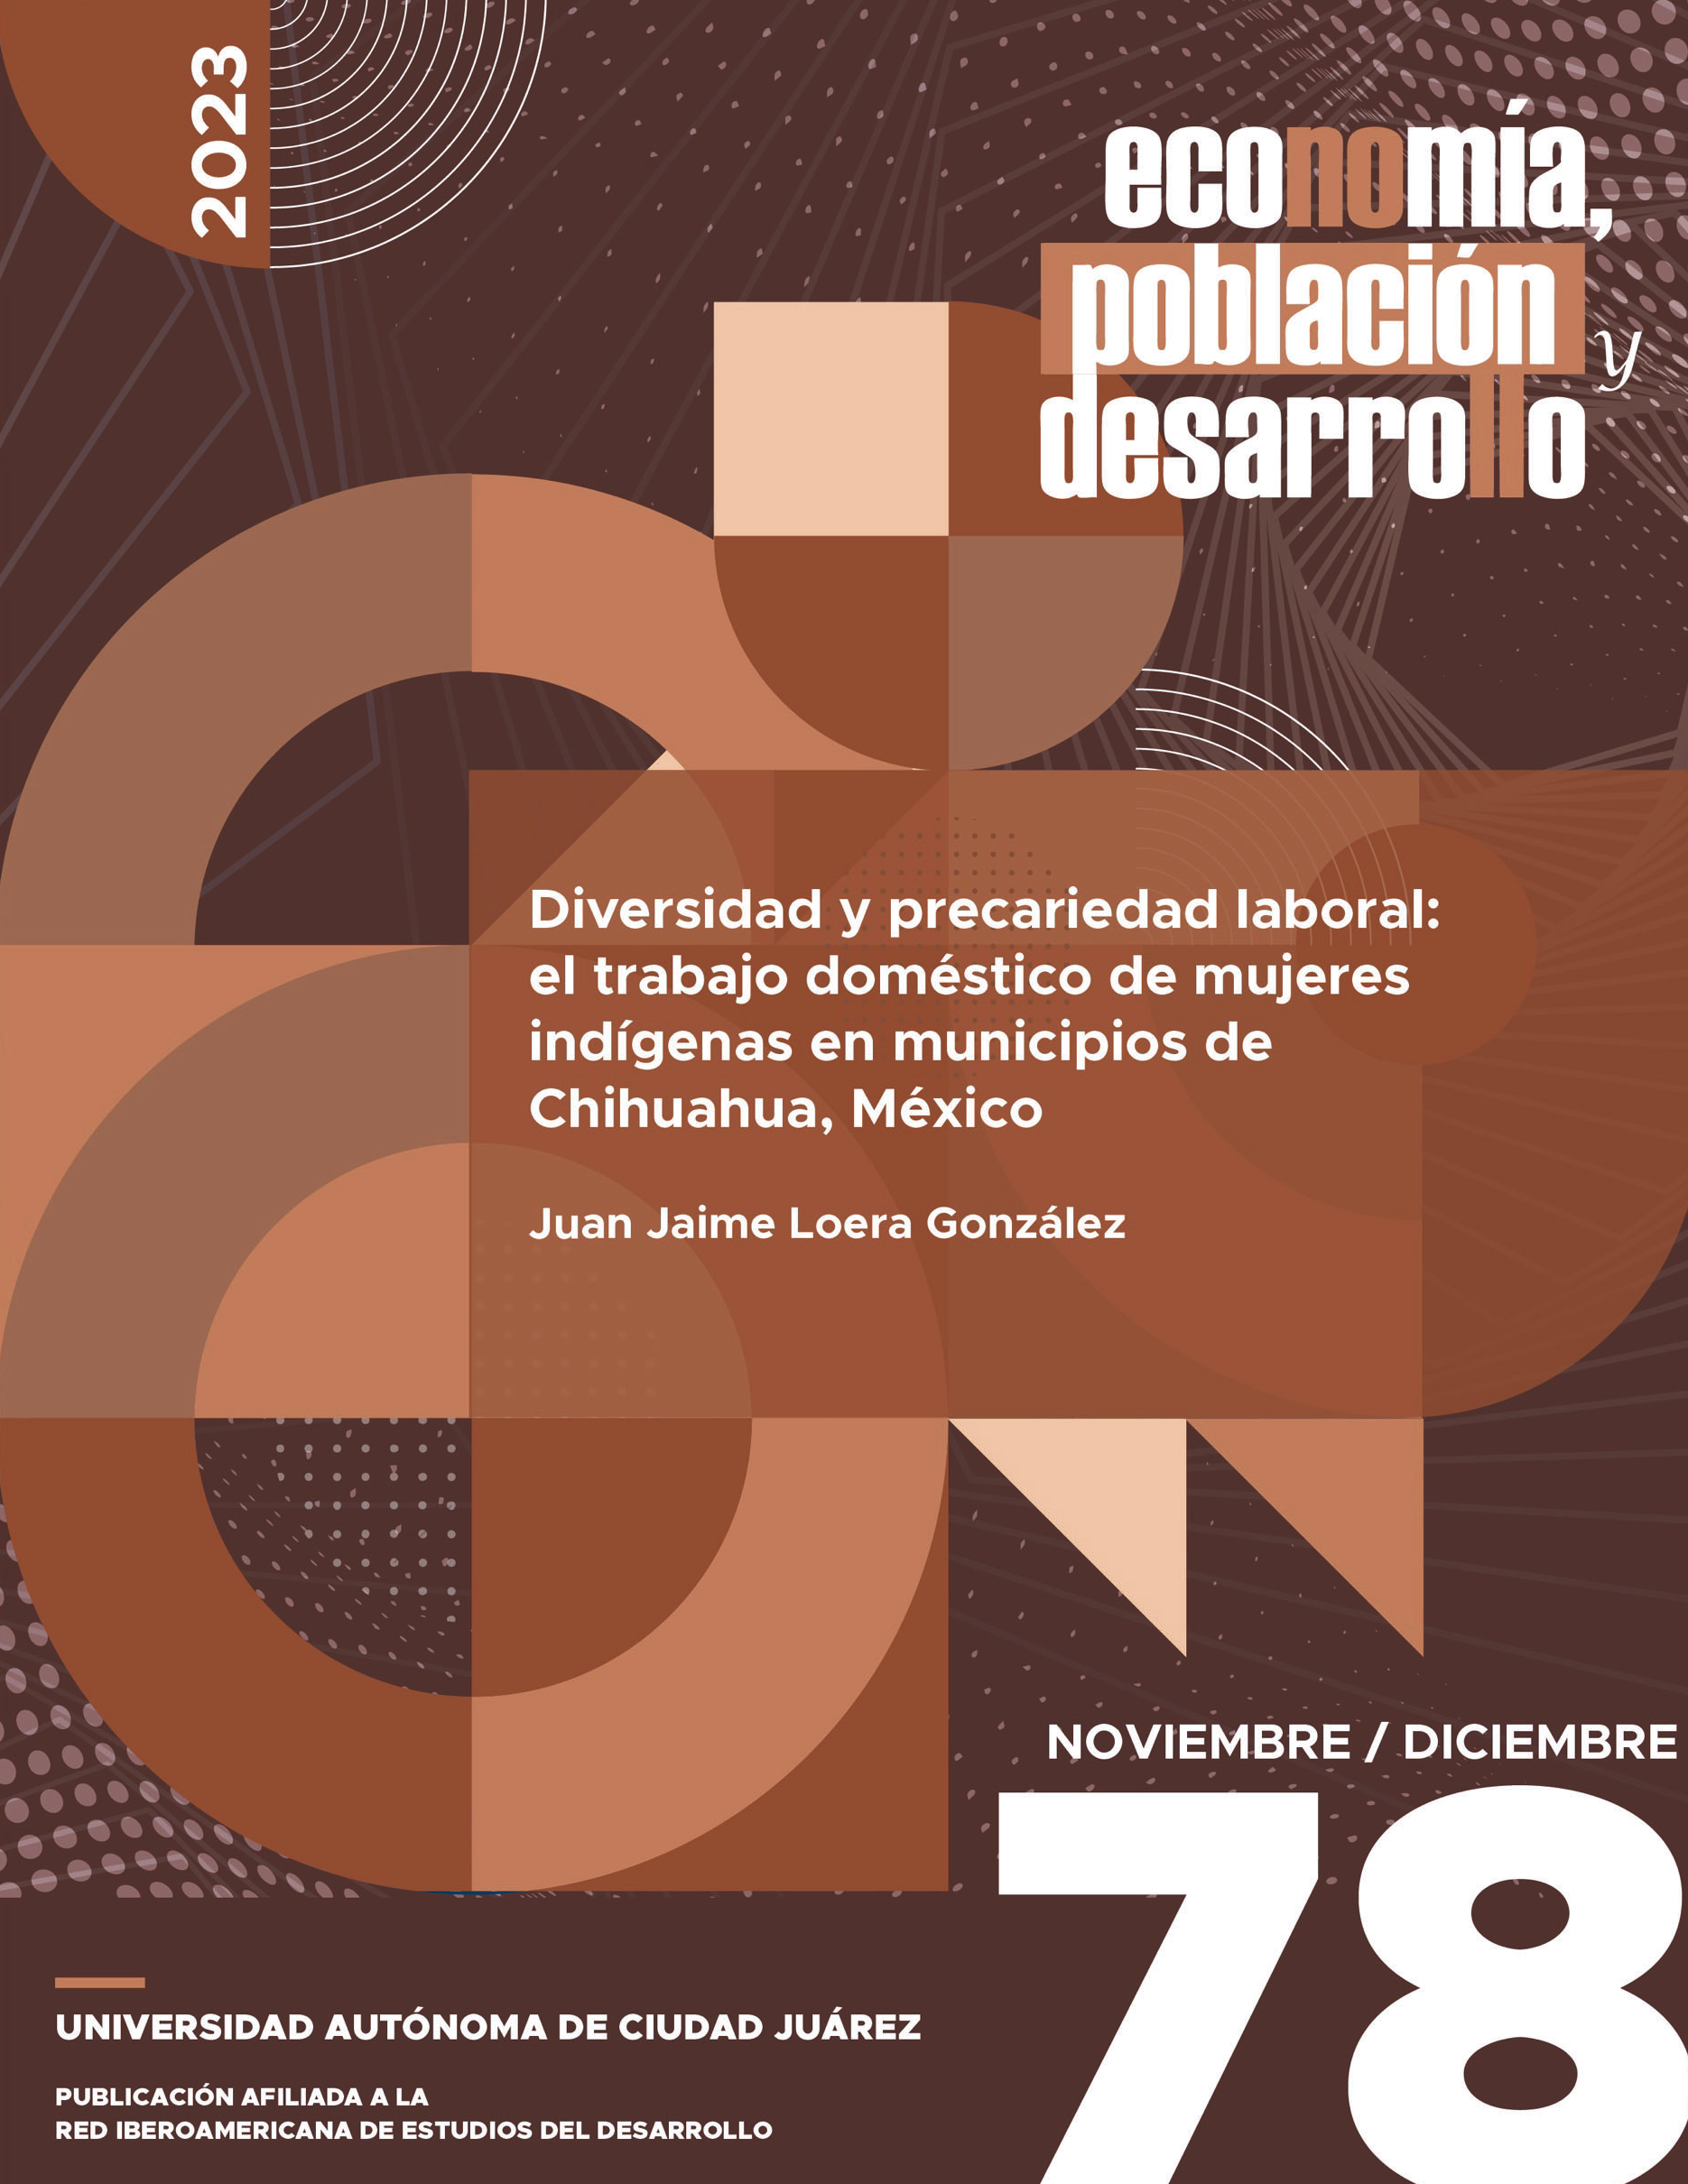 Diversidad y precariedad laboral: el trabajo doméstico de mujeres indígenas en municipios de Chihuahua, México